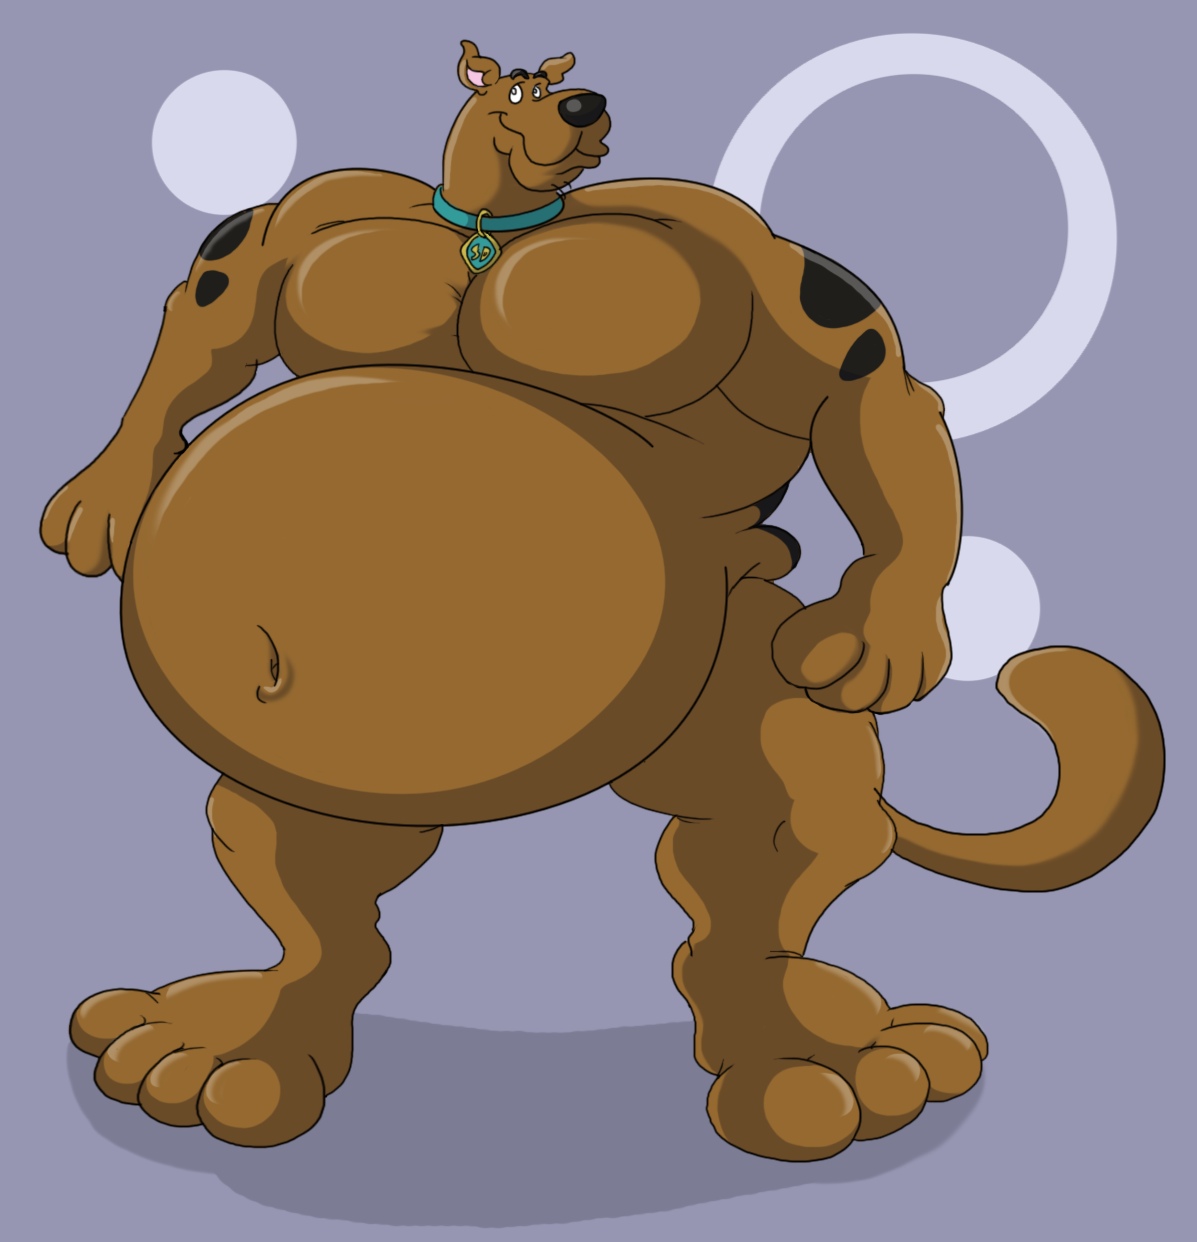 Scooby. belly. bulky. 